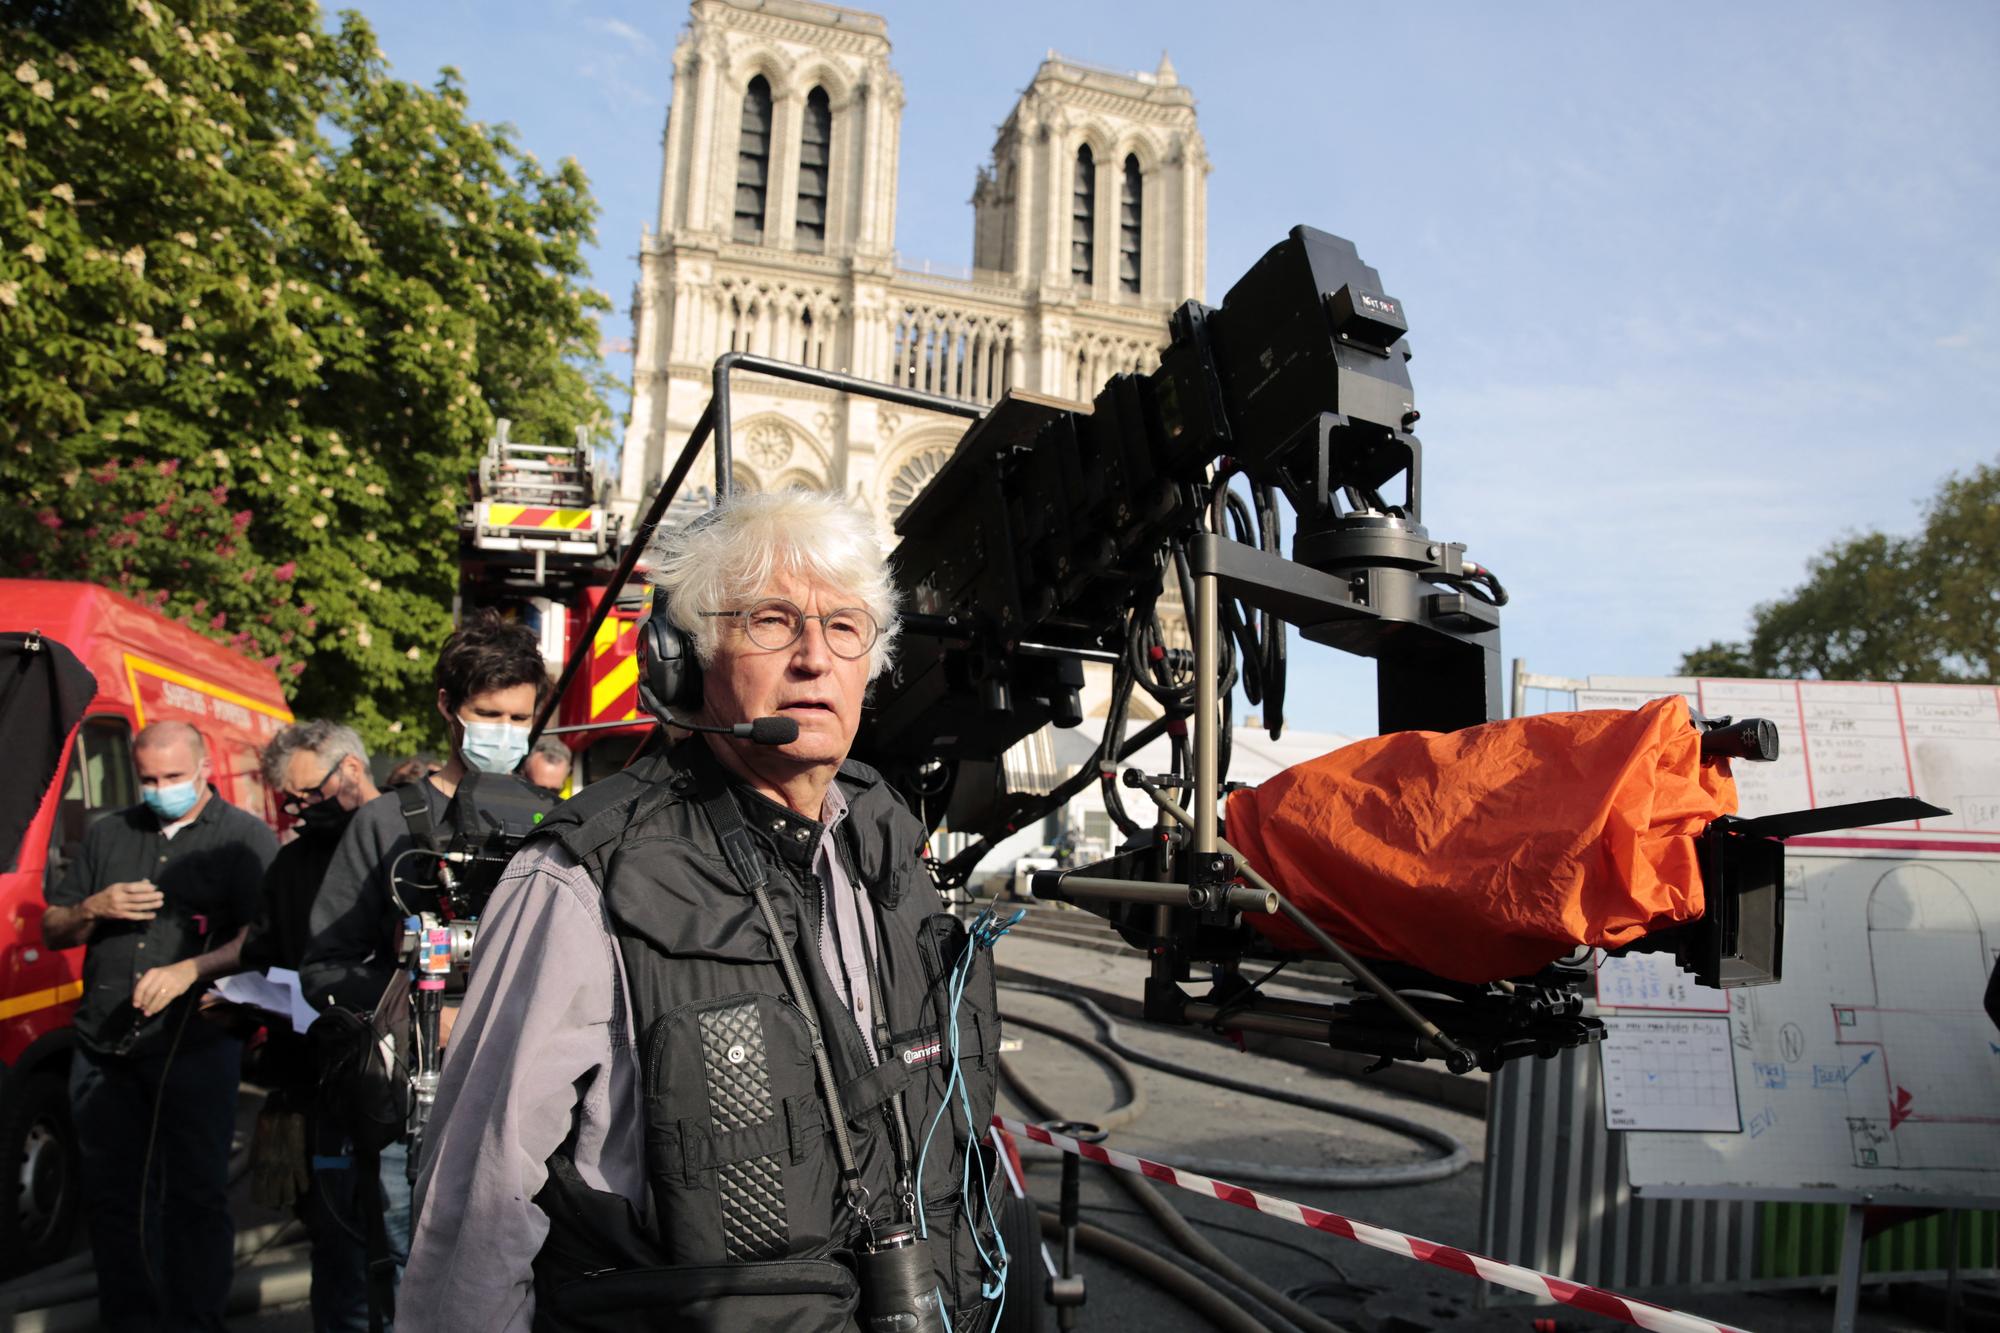 Jean-Jacques Annaud sur le tournage de "Notre-Dame brûle" en 2022. [COLLECTION CHRISTOPHEL VIA AFP - ©DAVID KOSKAS]